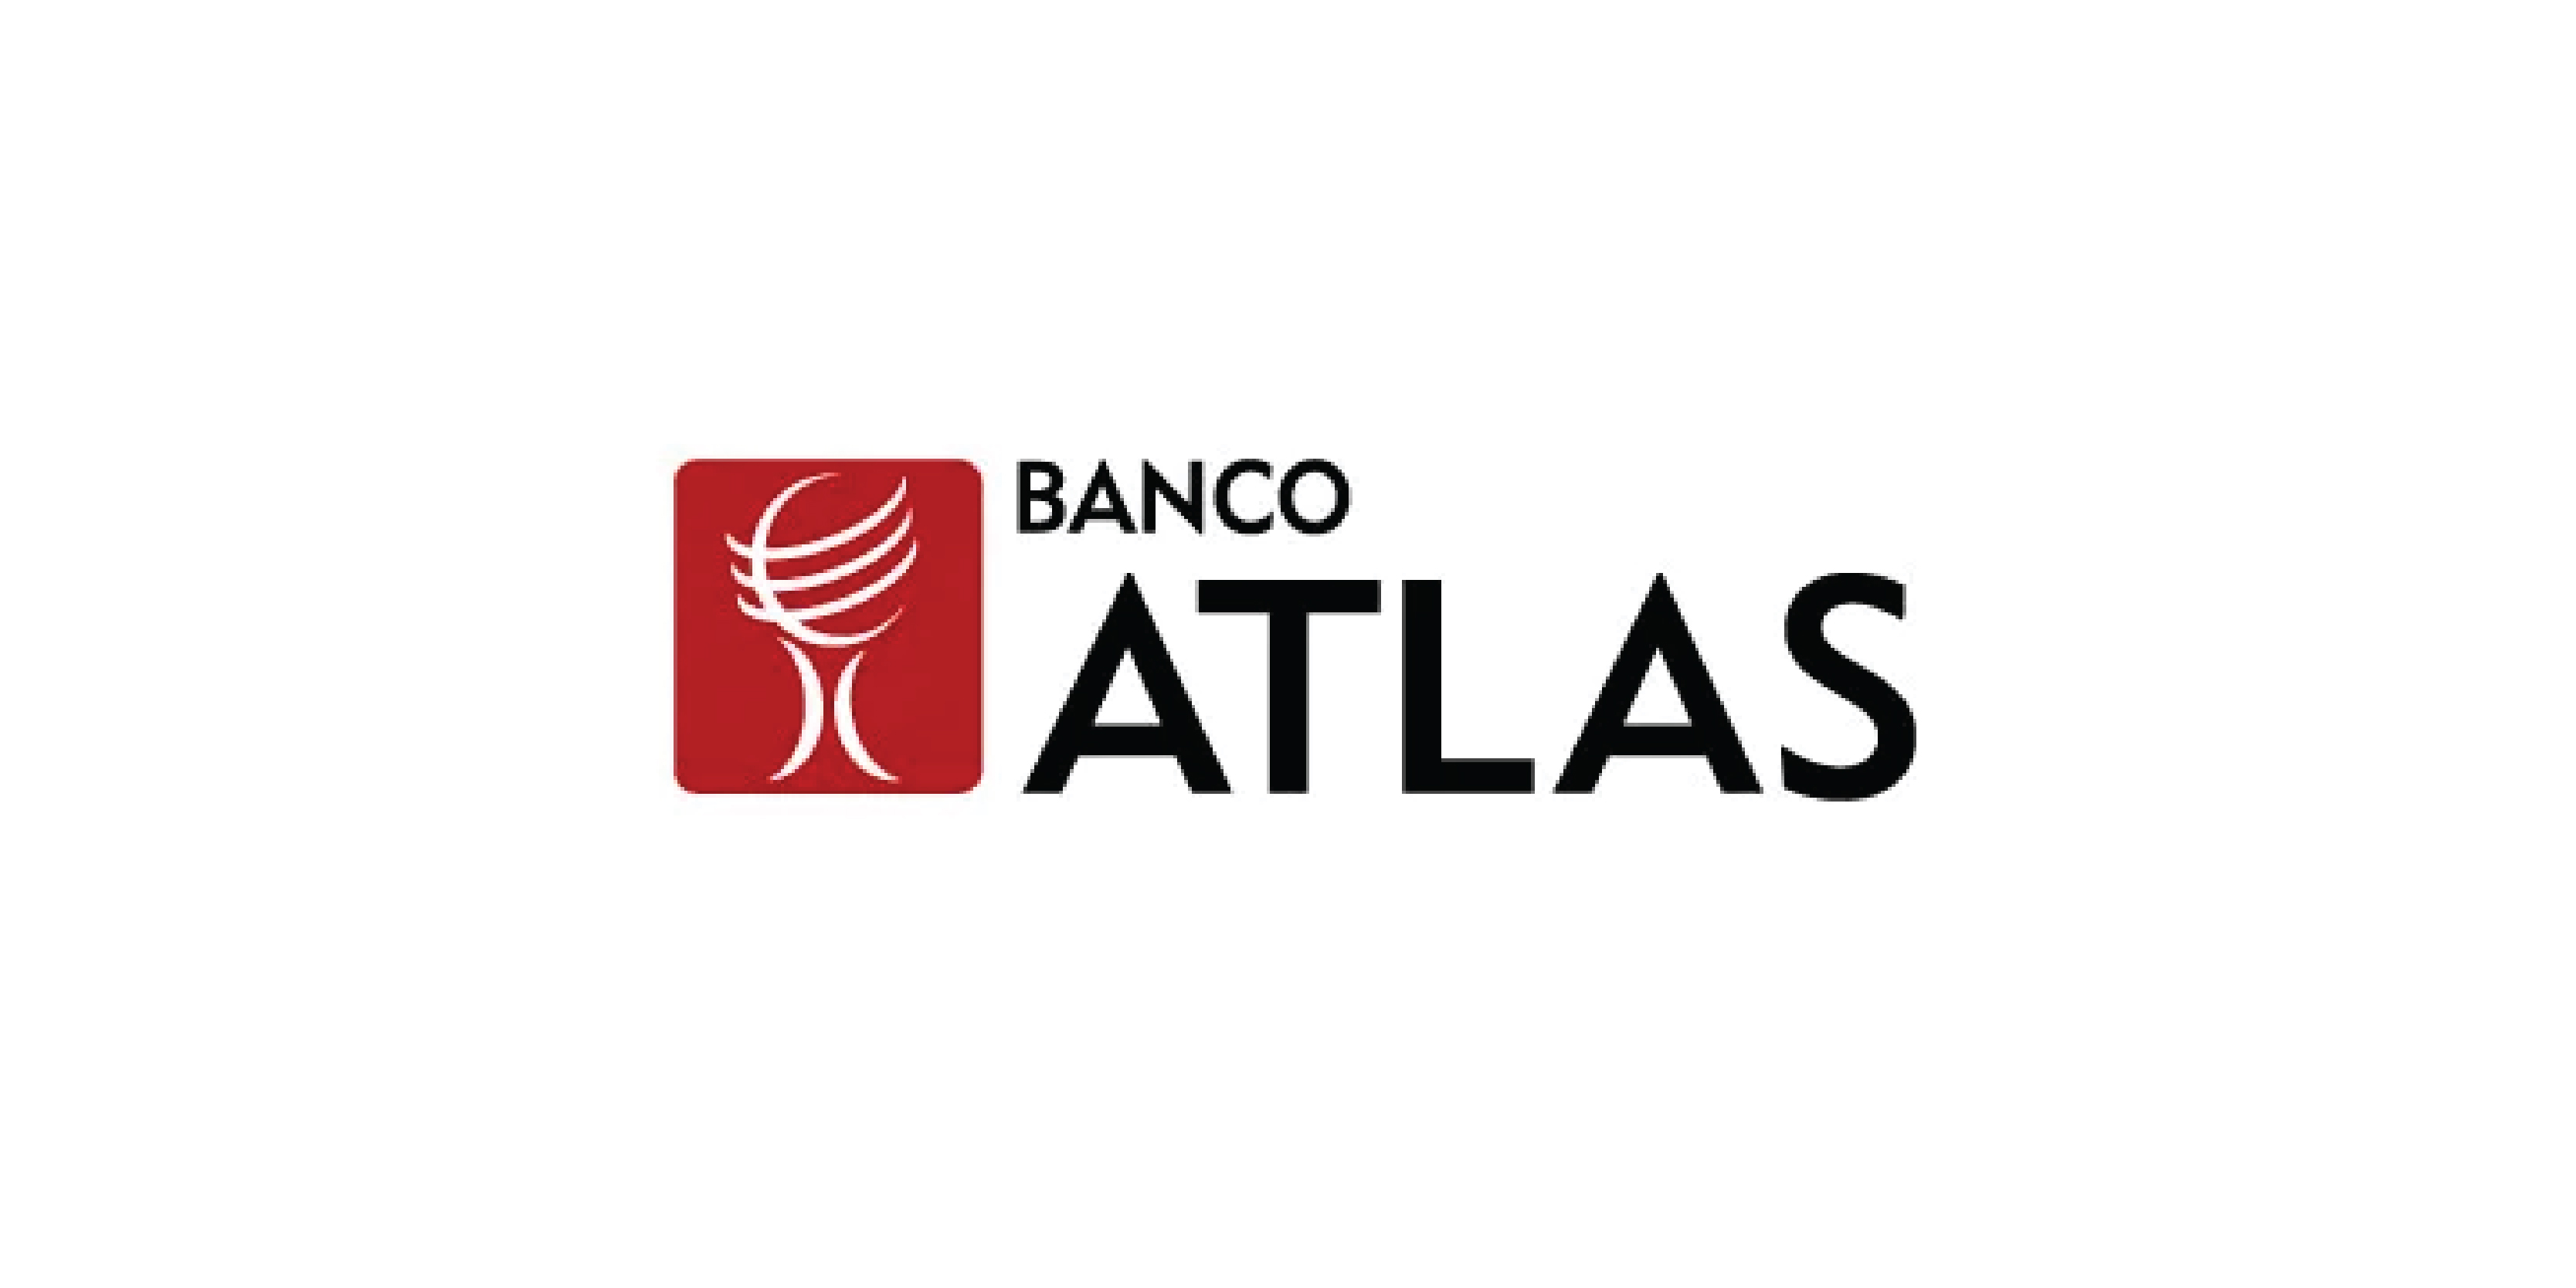 Banco Atlás S.A.